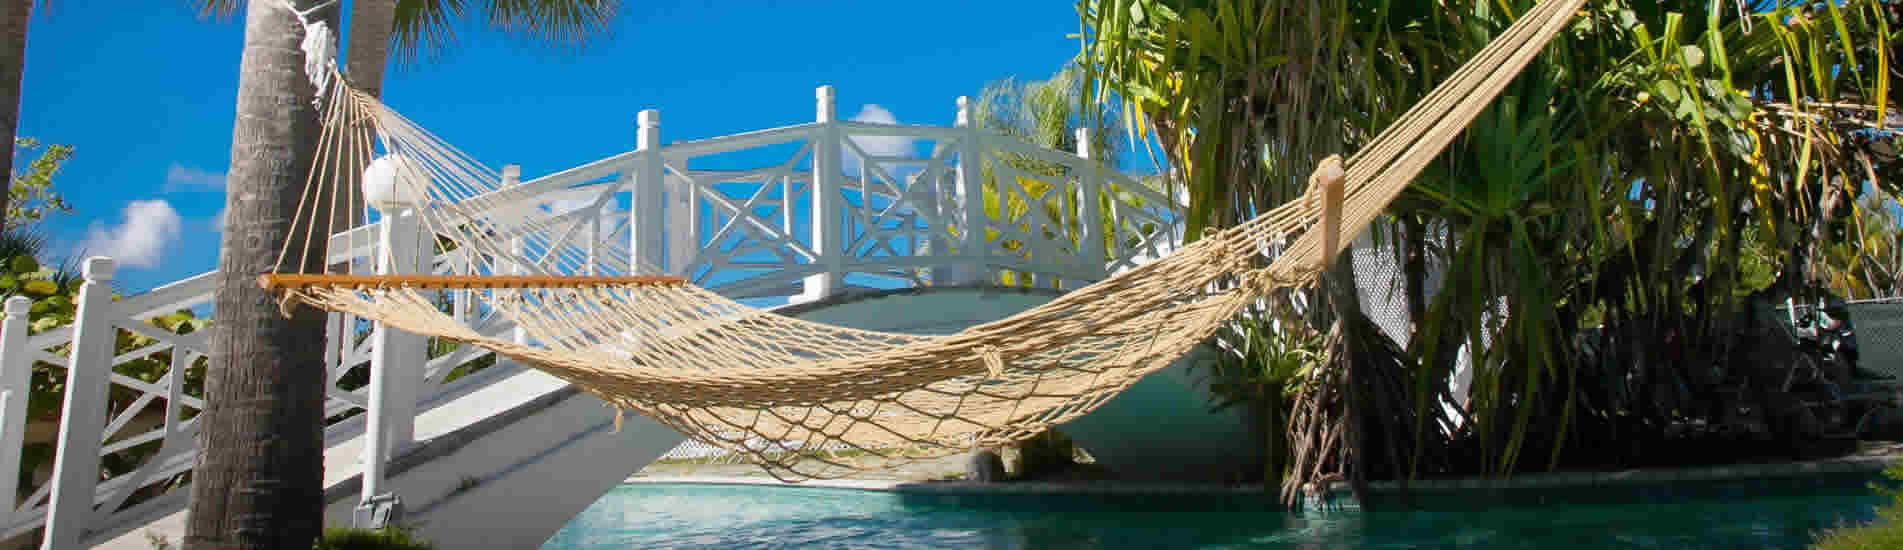 https://2nightcruises.com/wp-content/uploads/2016/09/bahamas-taino-beach-resort-hammock.jpg